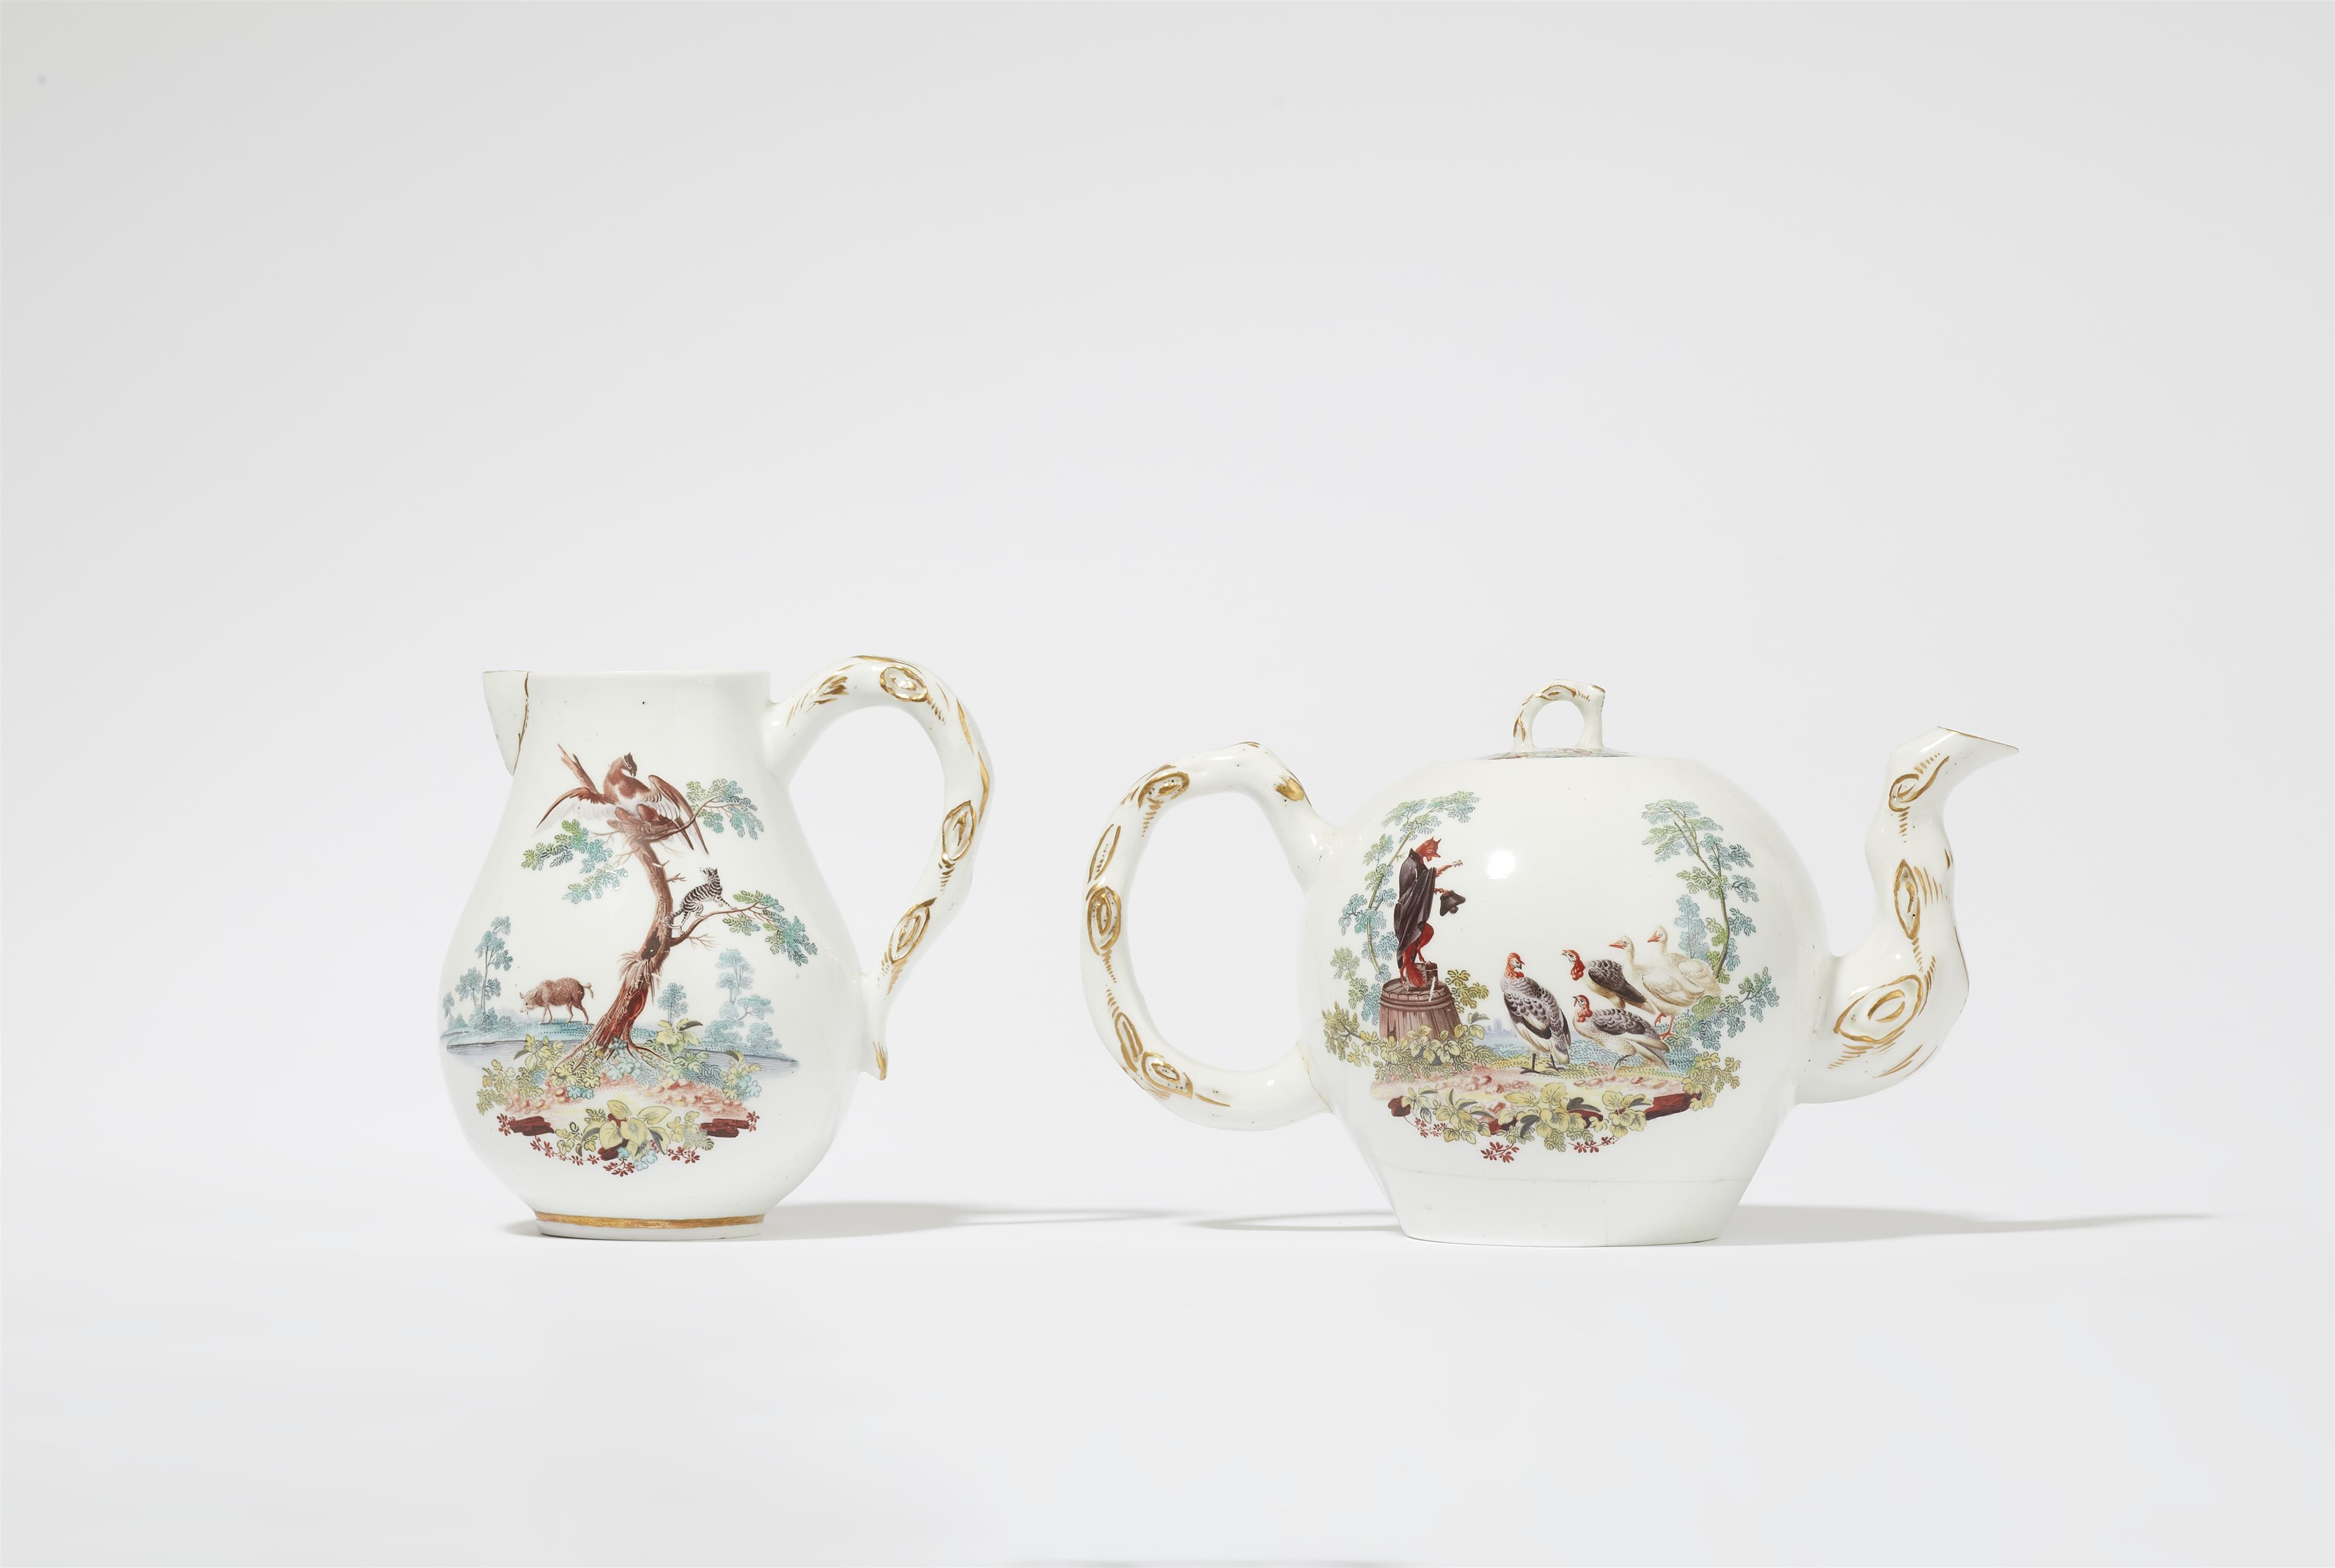 A Tournai porcelain teapot and milk jug with fable motifs after Jean de La Fontaine - image-2